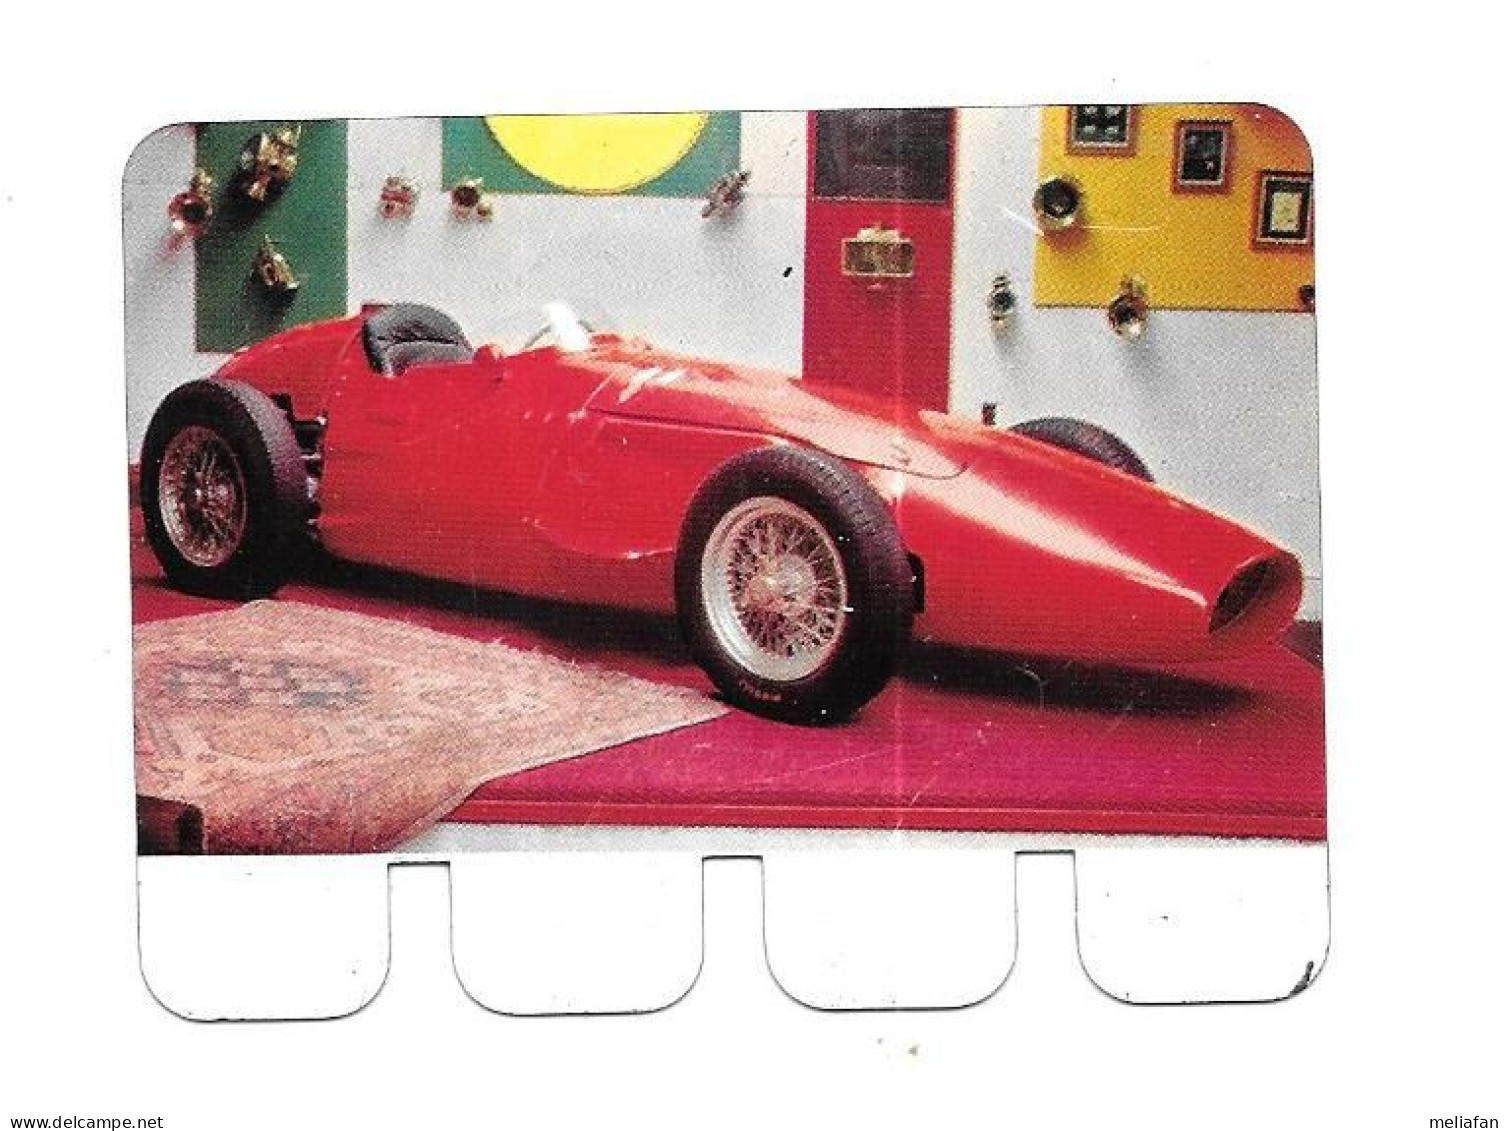 BL96 - CROMO METTALICO SOUBRY - MASERATI DI  FANGIO 1956 - Car Racing - F1